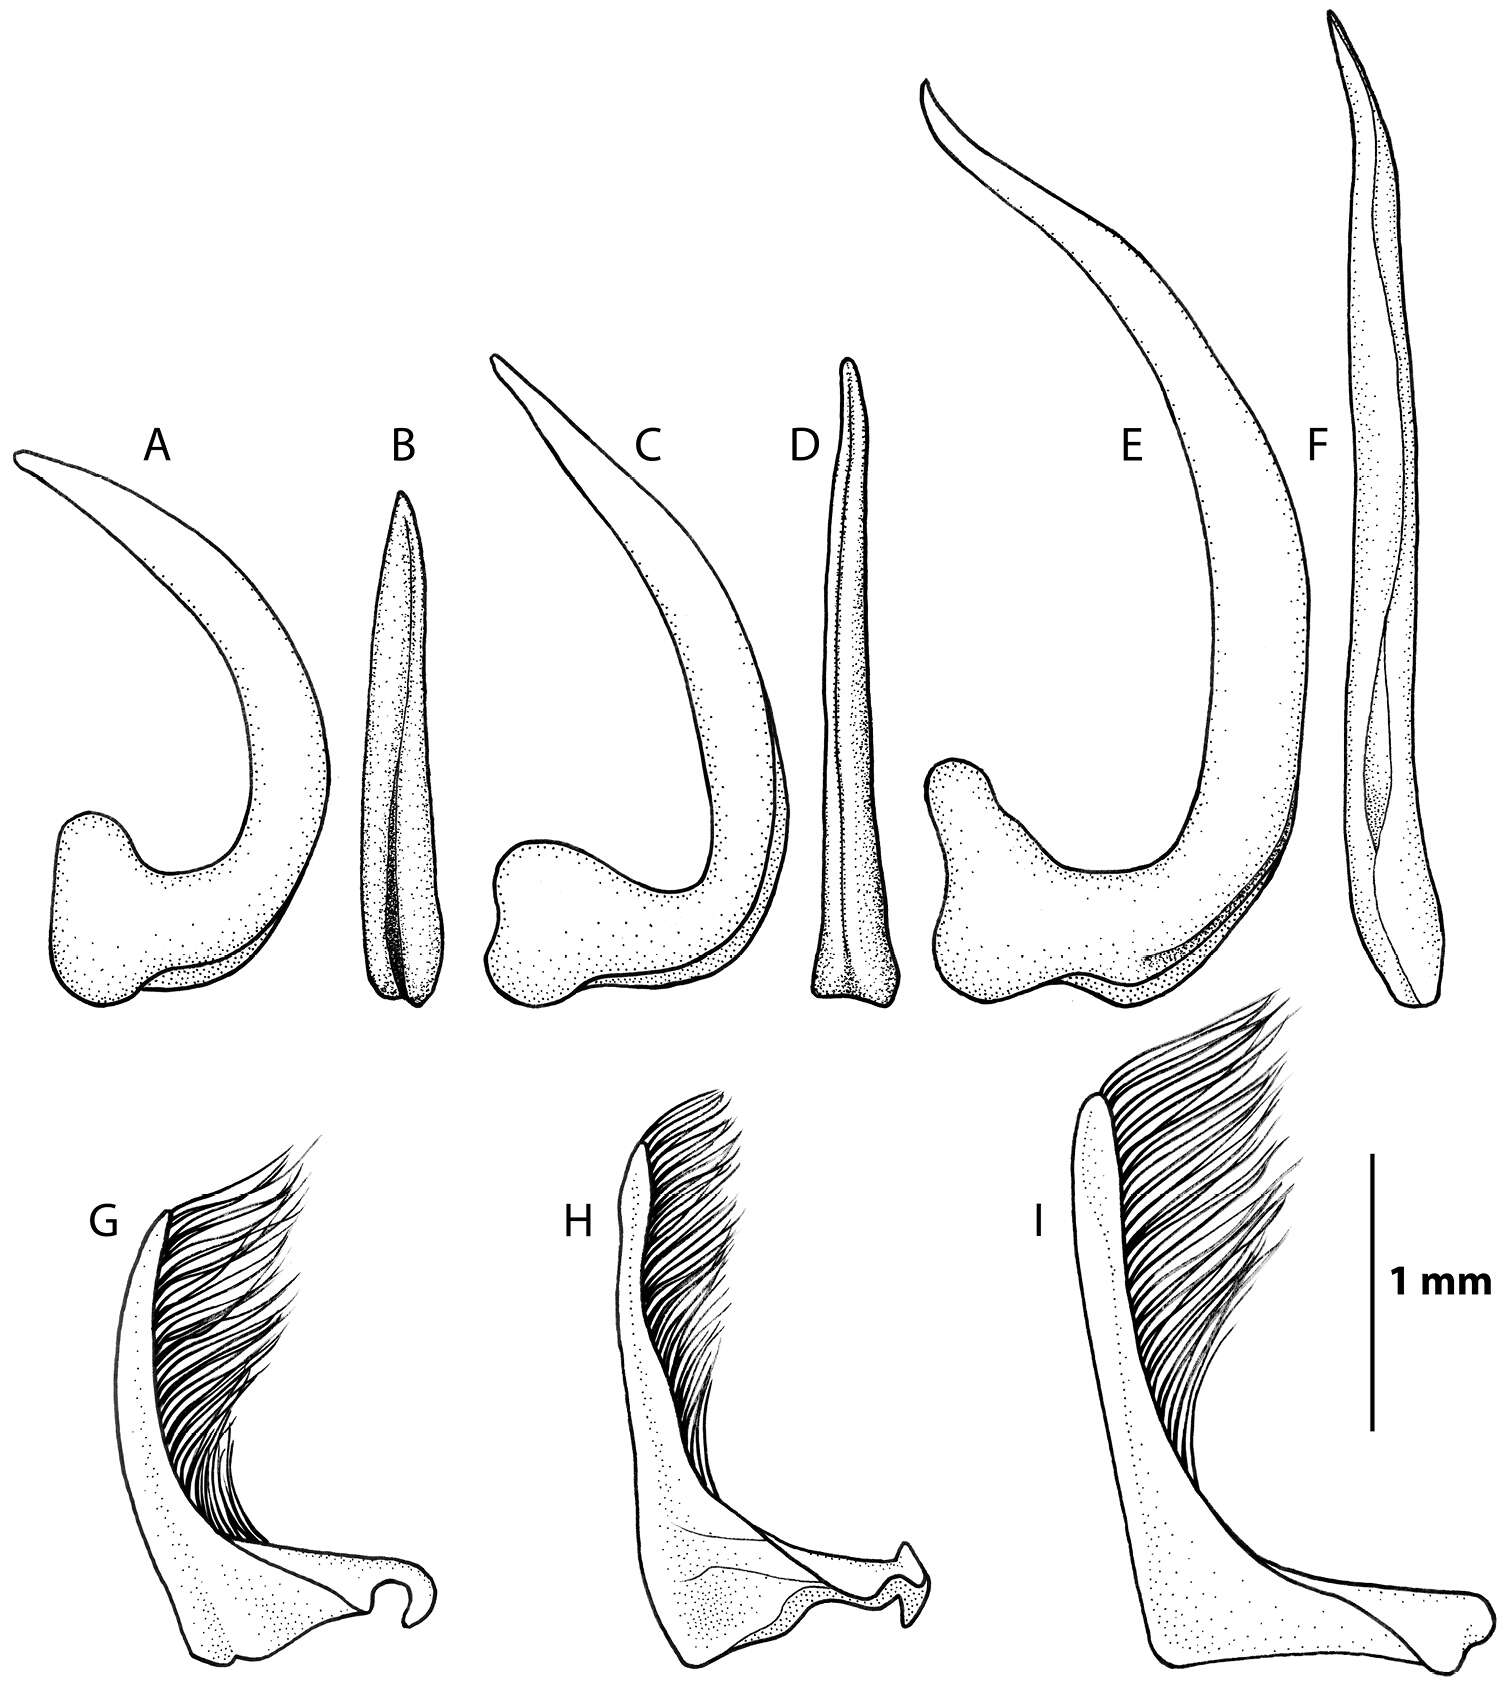 Image of Rhantus (Rhantus) latus (Fairmaire 1869)